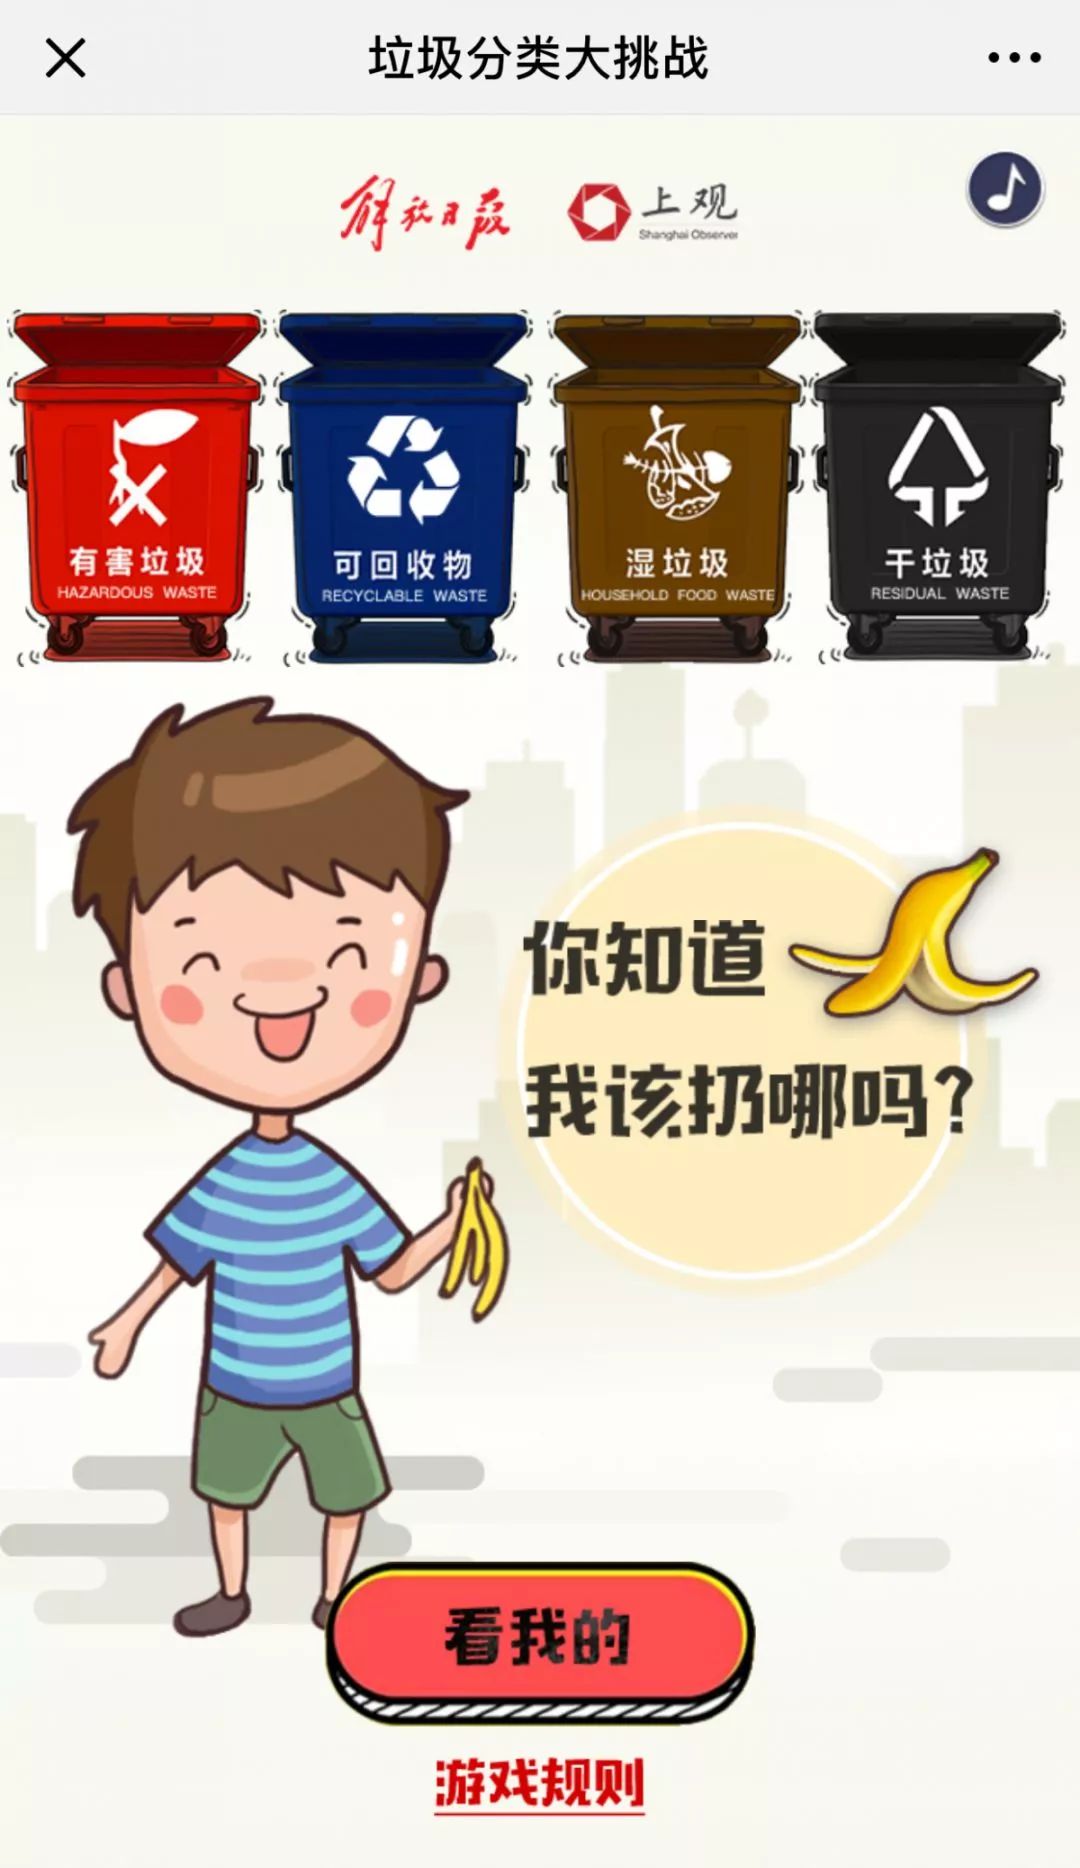 活动现场正式启动上海市青少年垃圾分类知识竞答活动